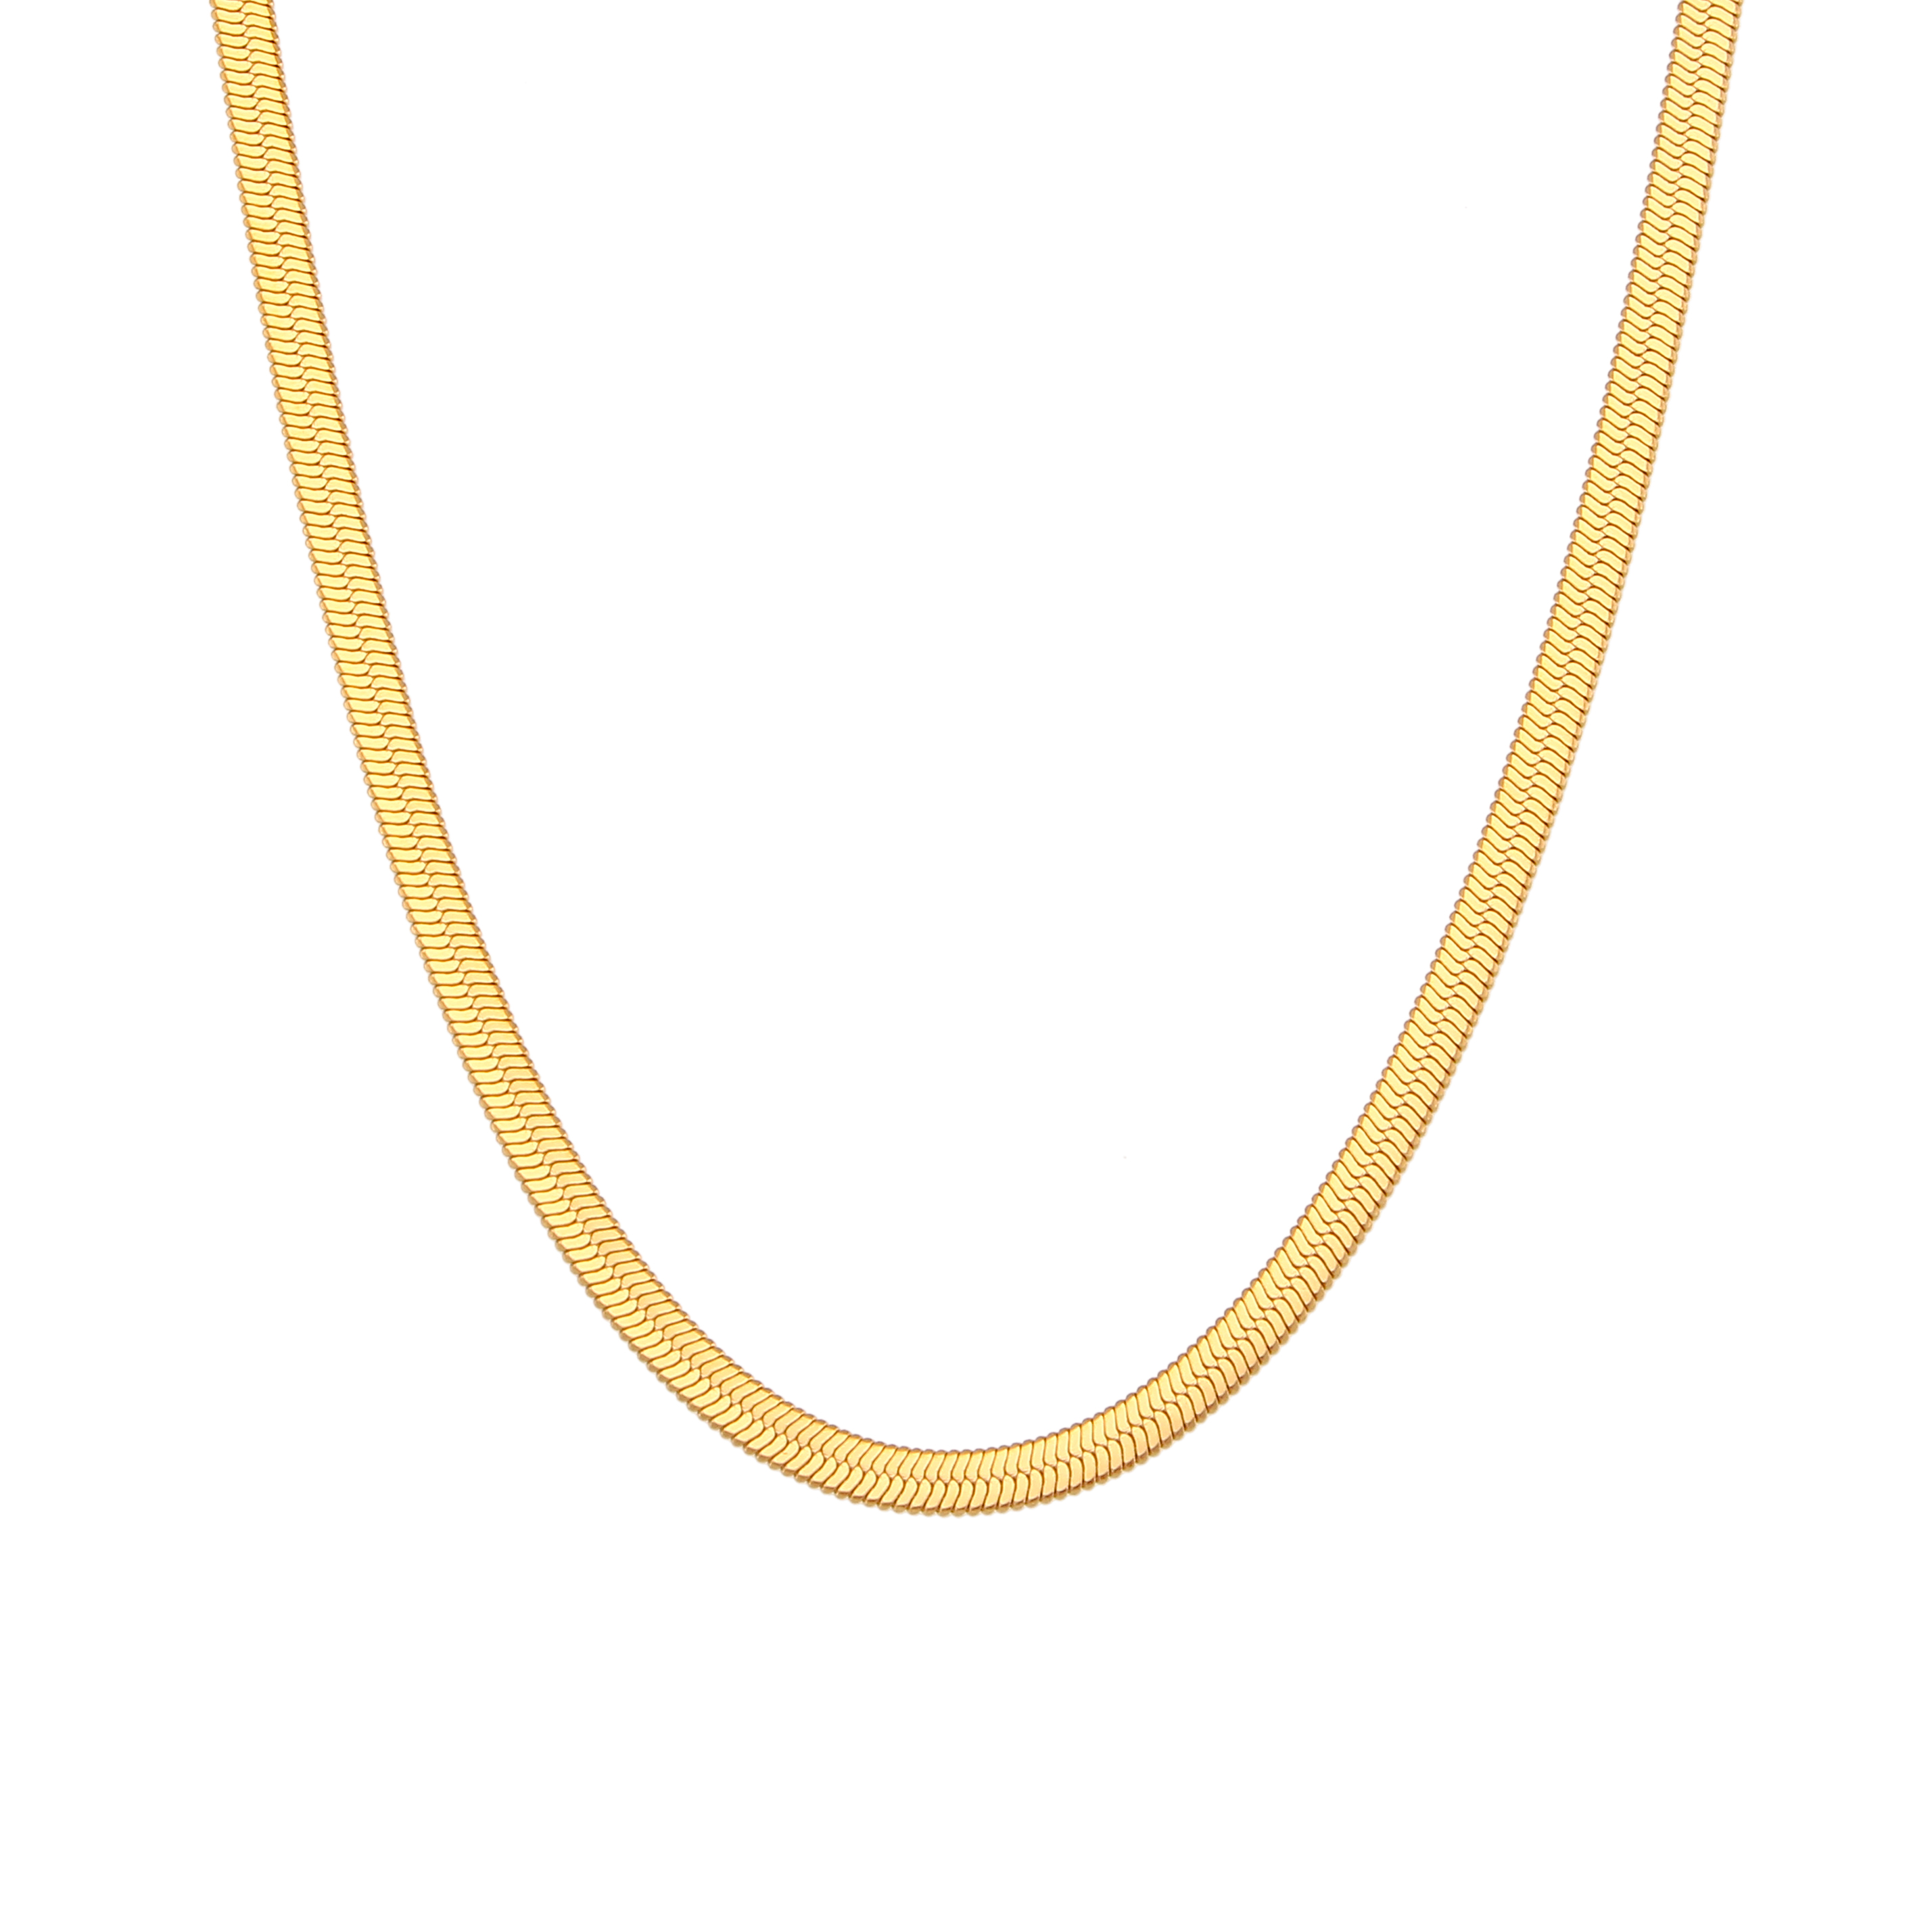 Collar Acero Liso Collar Acero - 4 mm Herryingbone - 32+6 cm, 38+4 cm, 42 cm y 48 cm - Color Oro